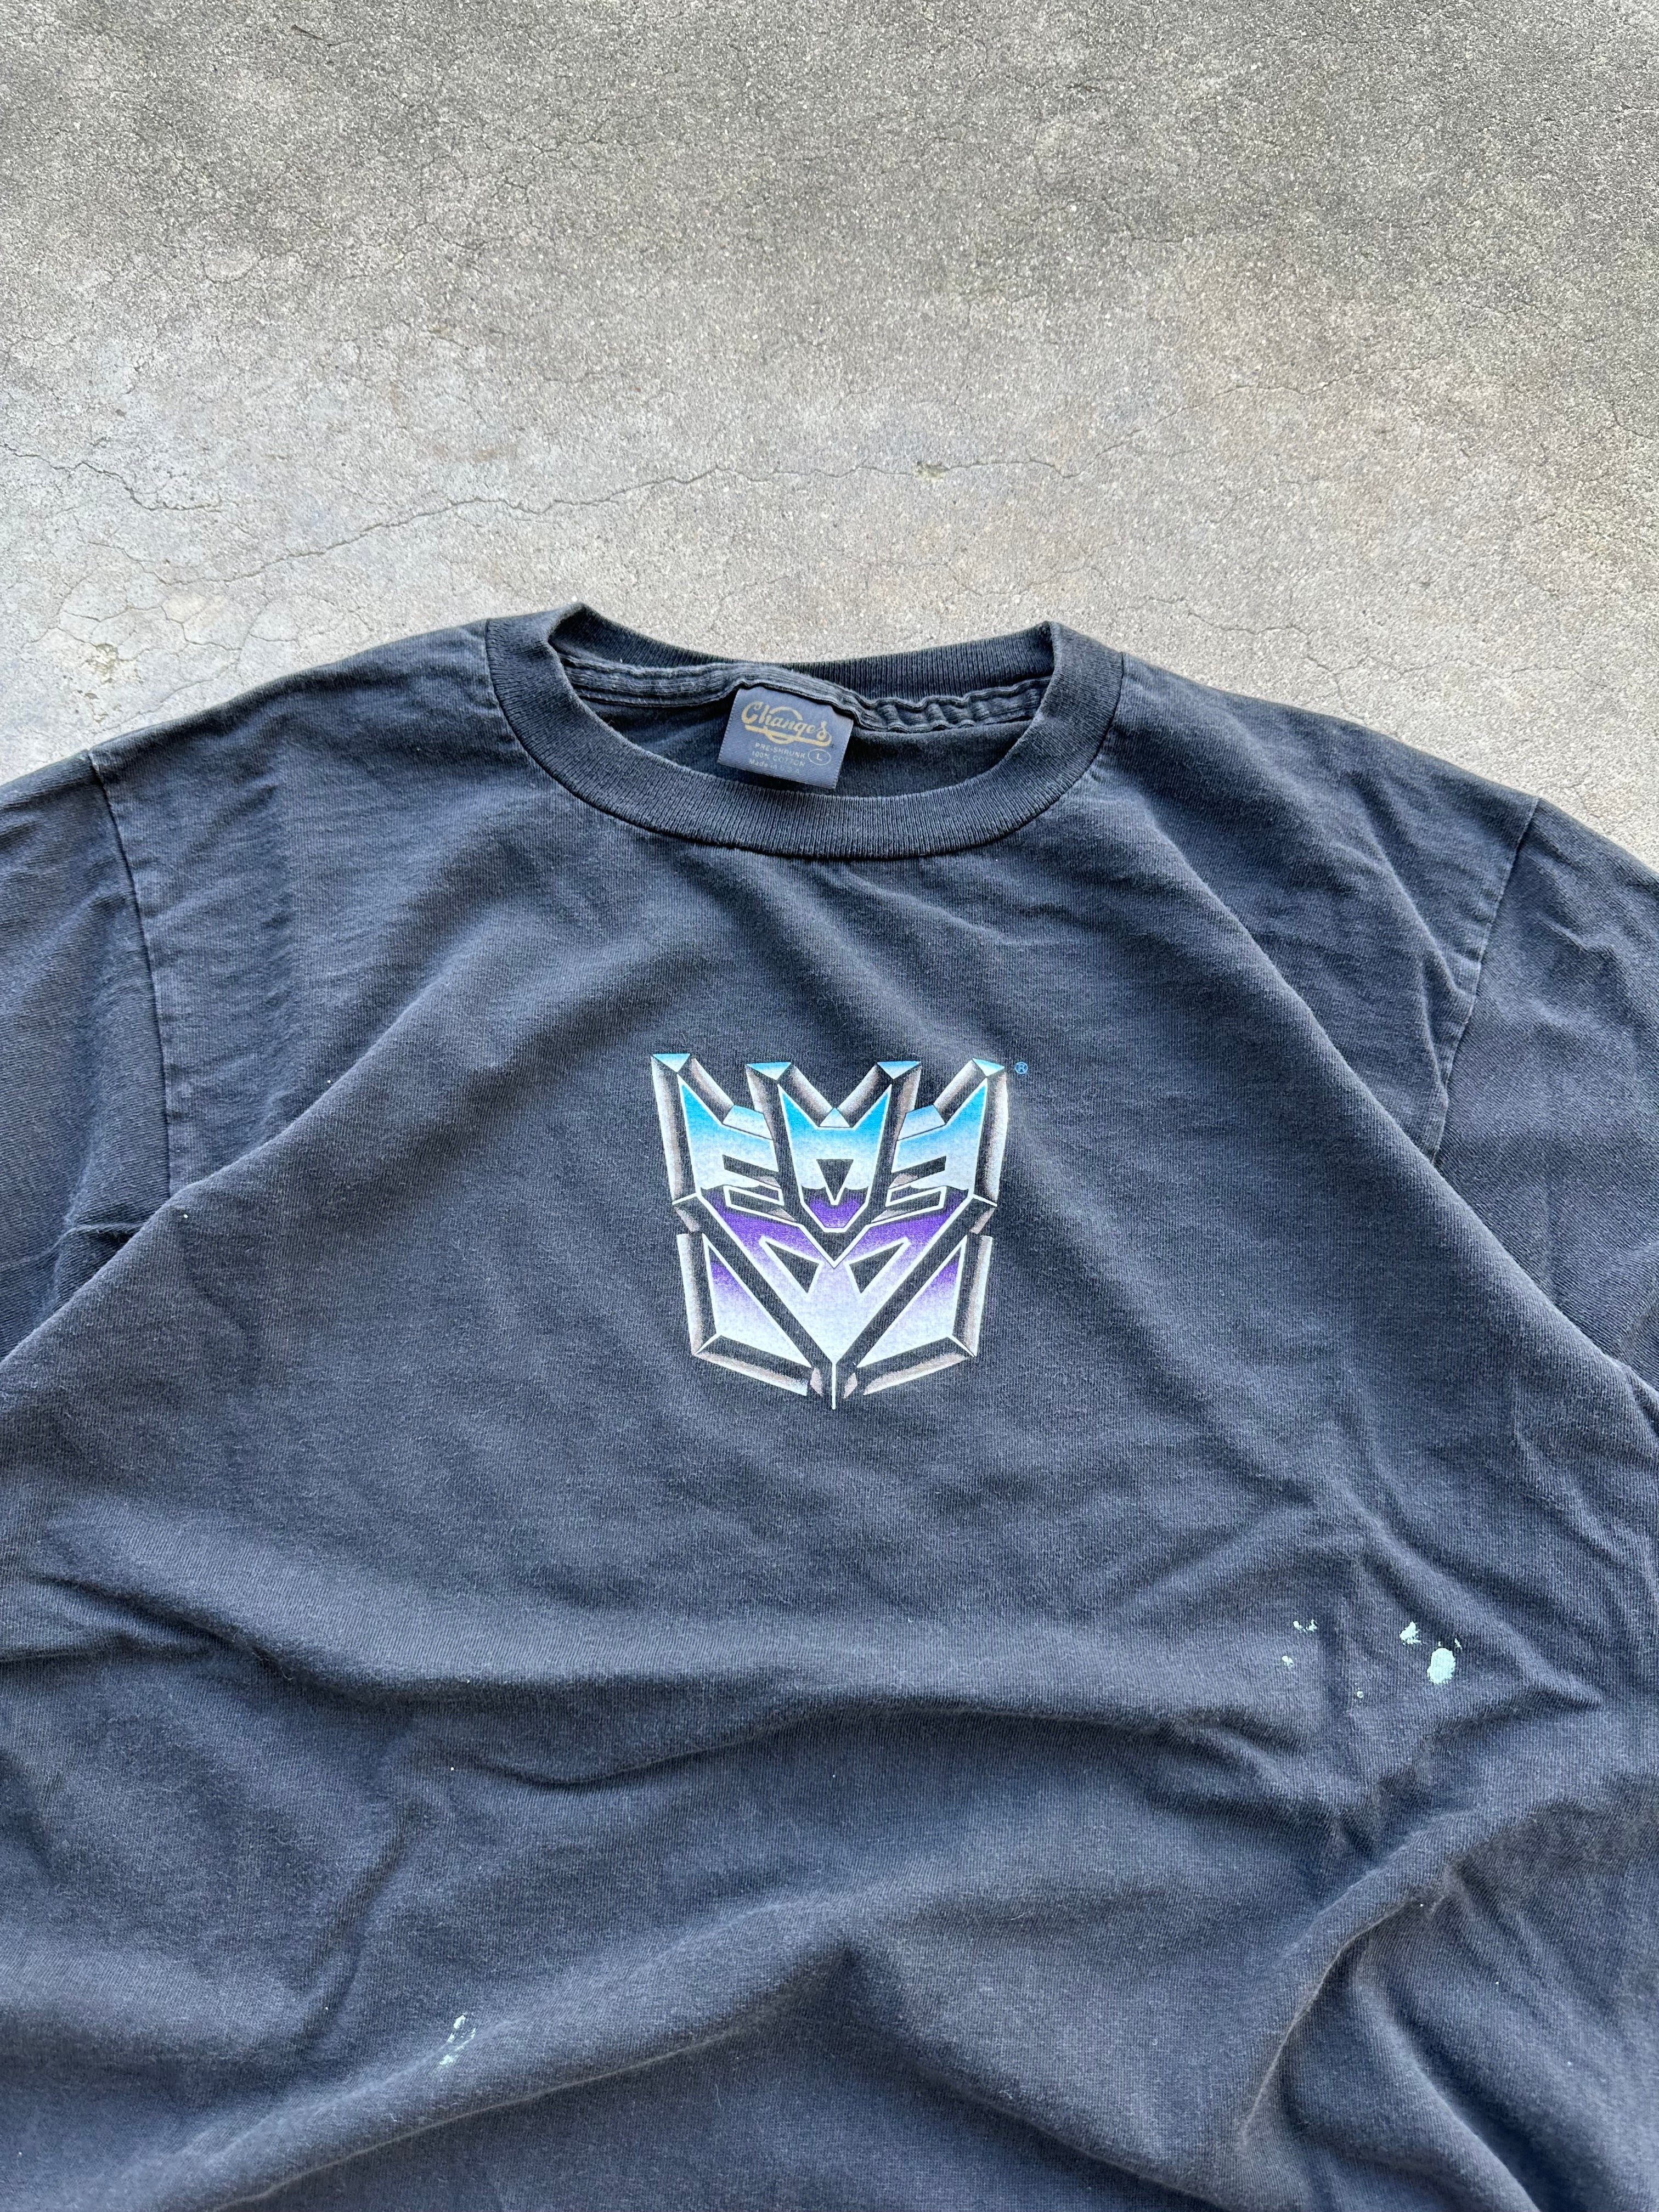 1990s Faded Transformers T-Shirt (L)